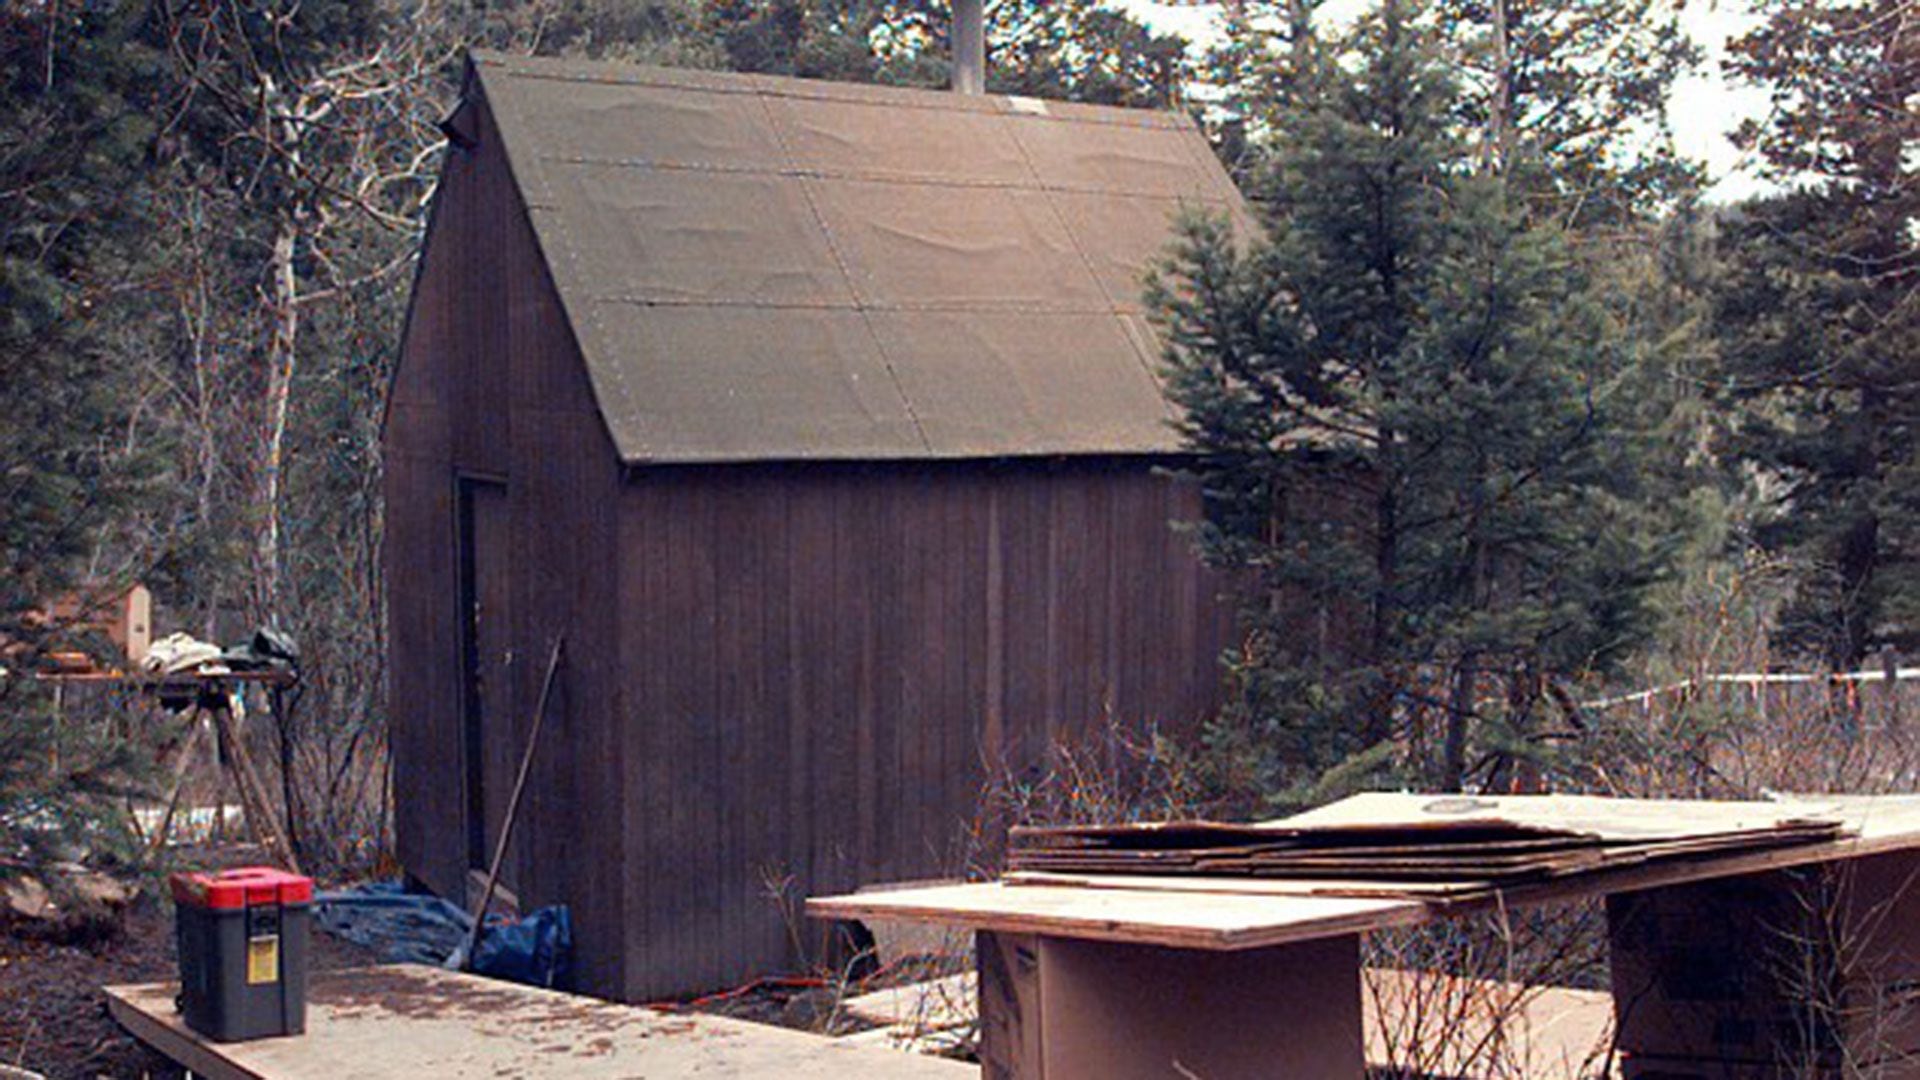 El "Unabomber" fue detenido en una cabaña primitiva al este de Missoula, Montana, donde había estado viviendo sin electricidad y subsistiendo a base de conejos salvajes